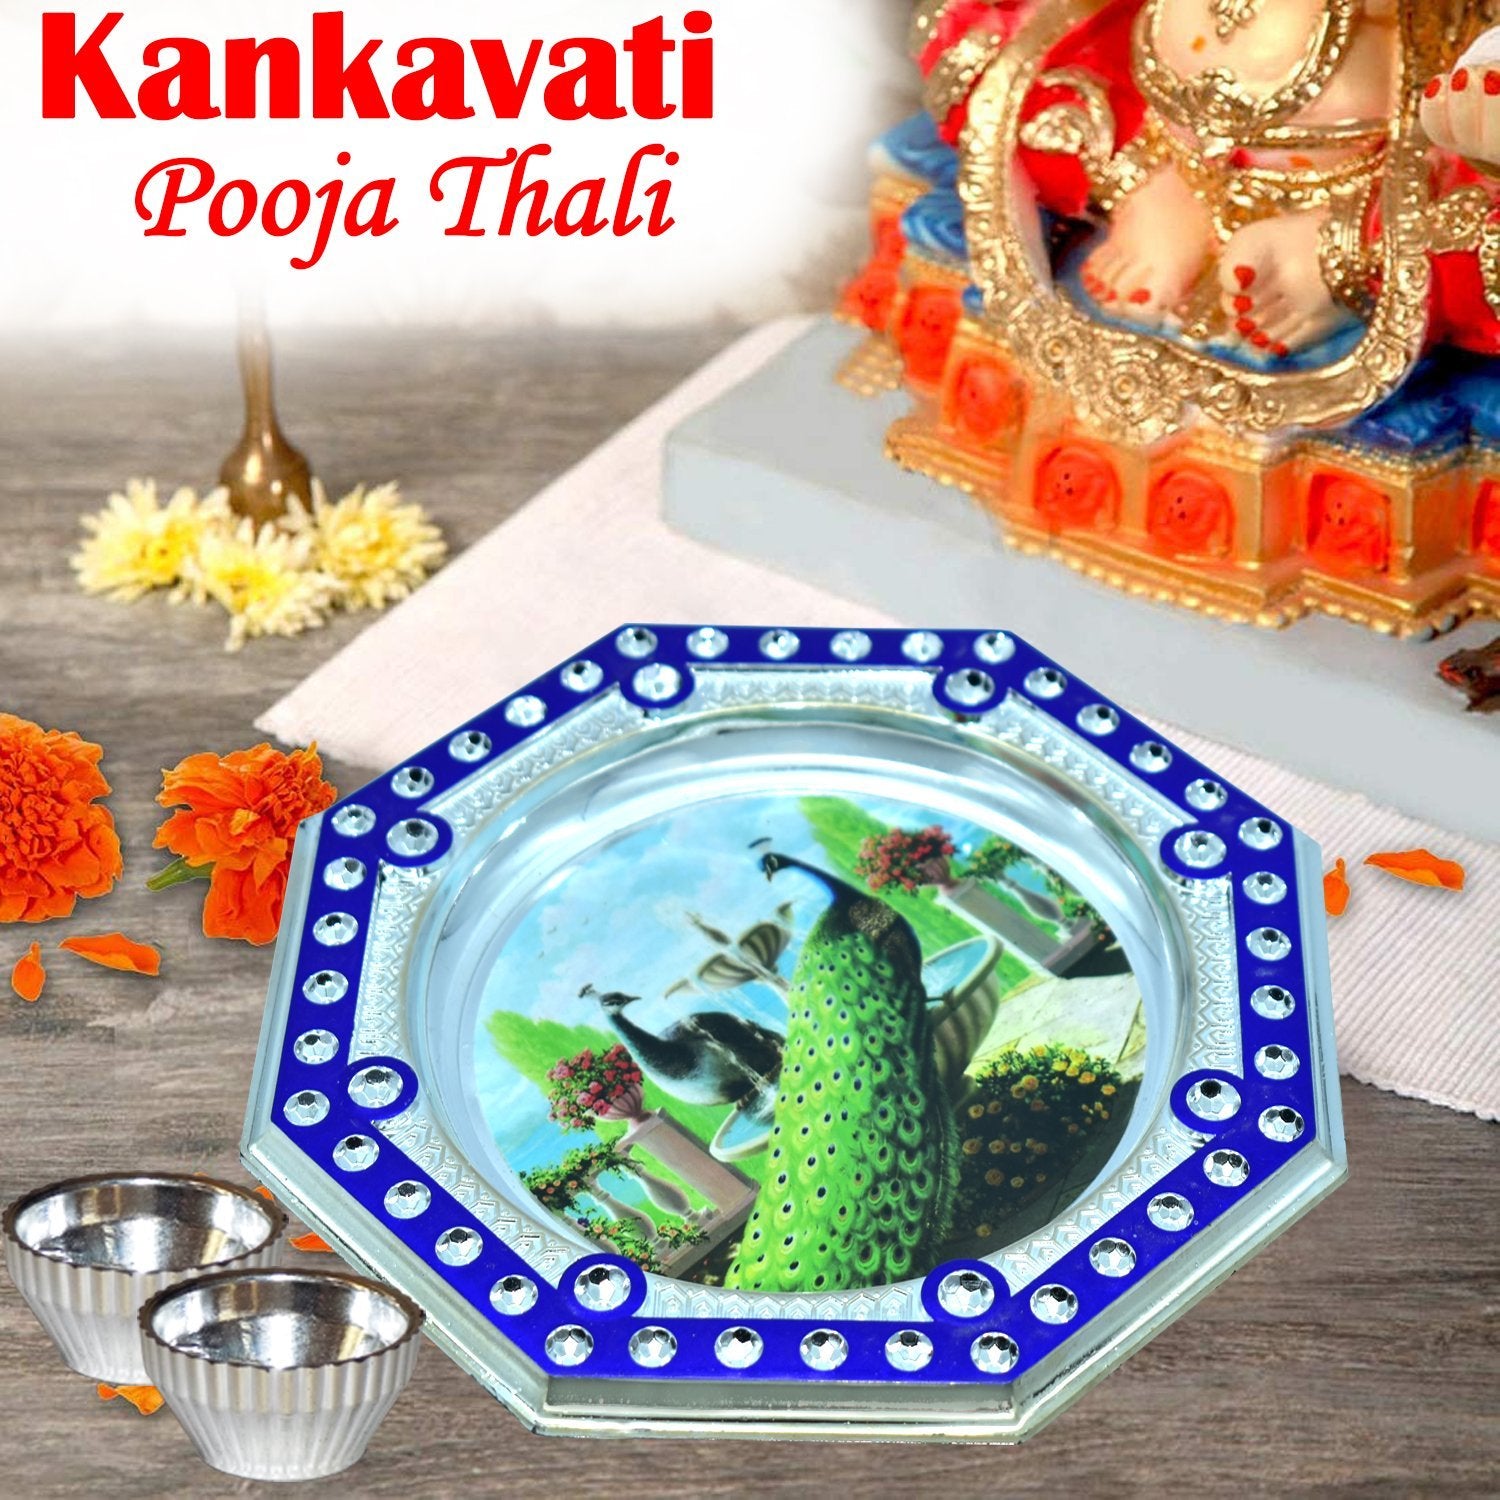 2493 Stainless Steel Handmade Kankavati Pooja Thali